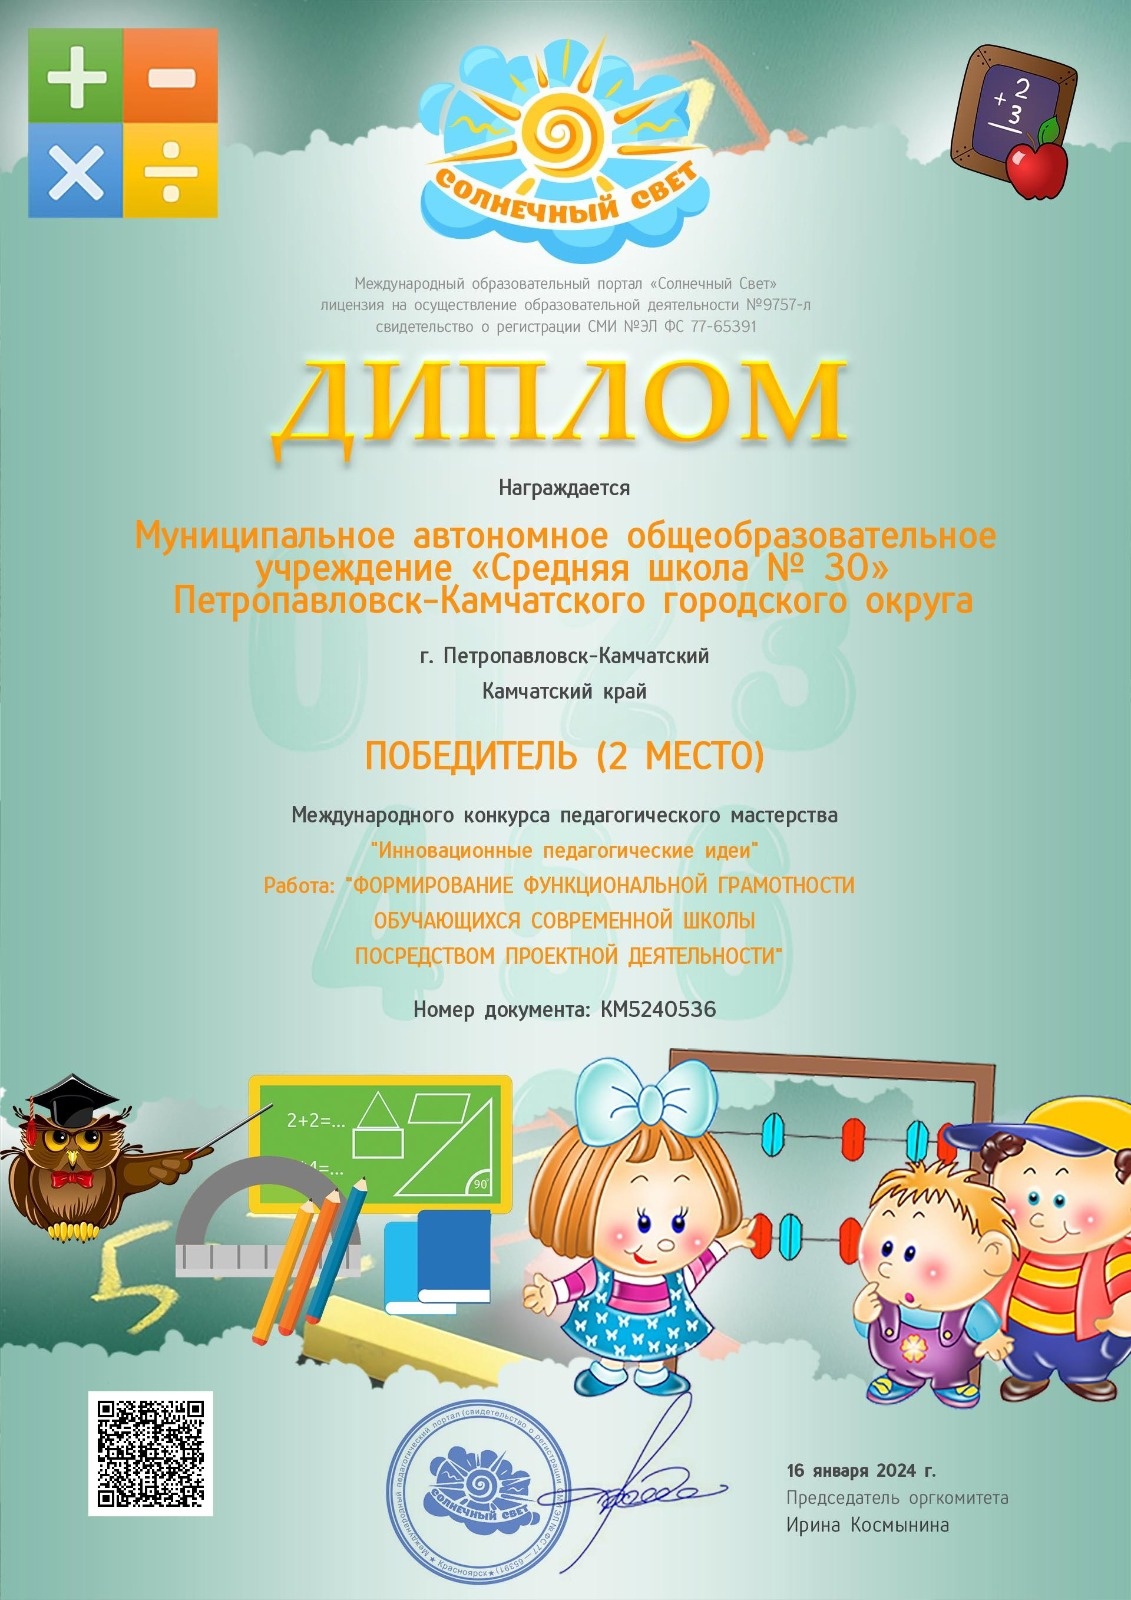 Международный конкурс педагогического мастерства.